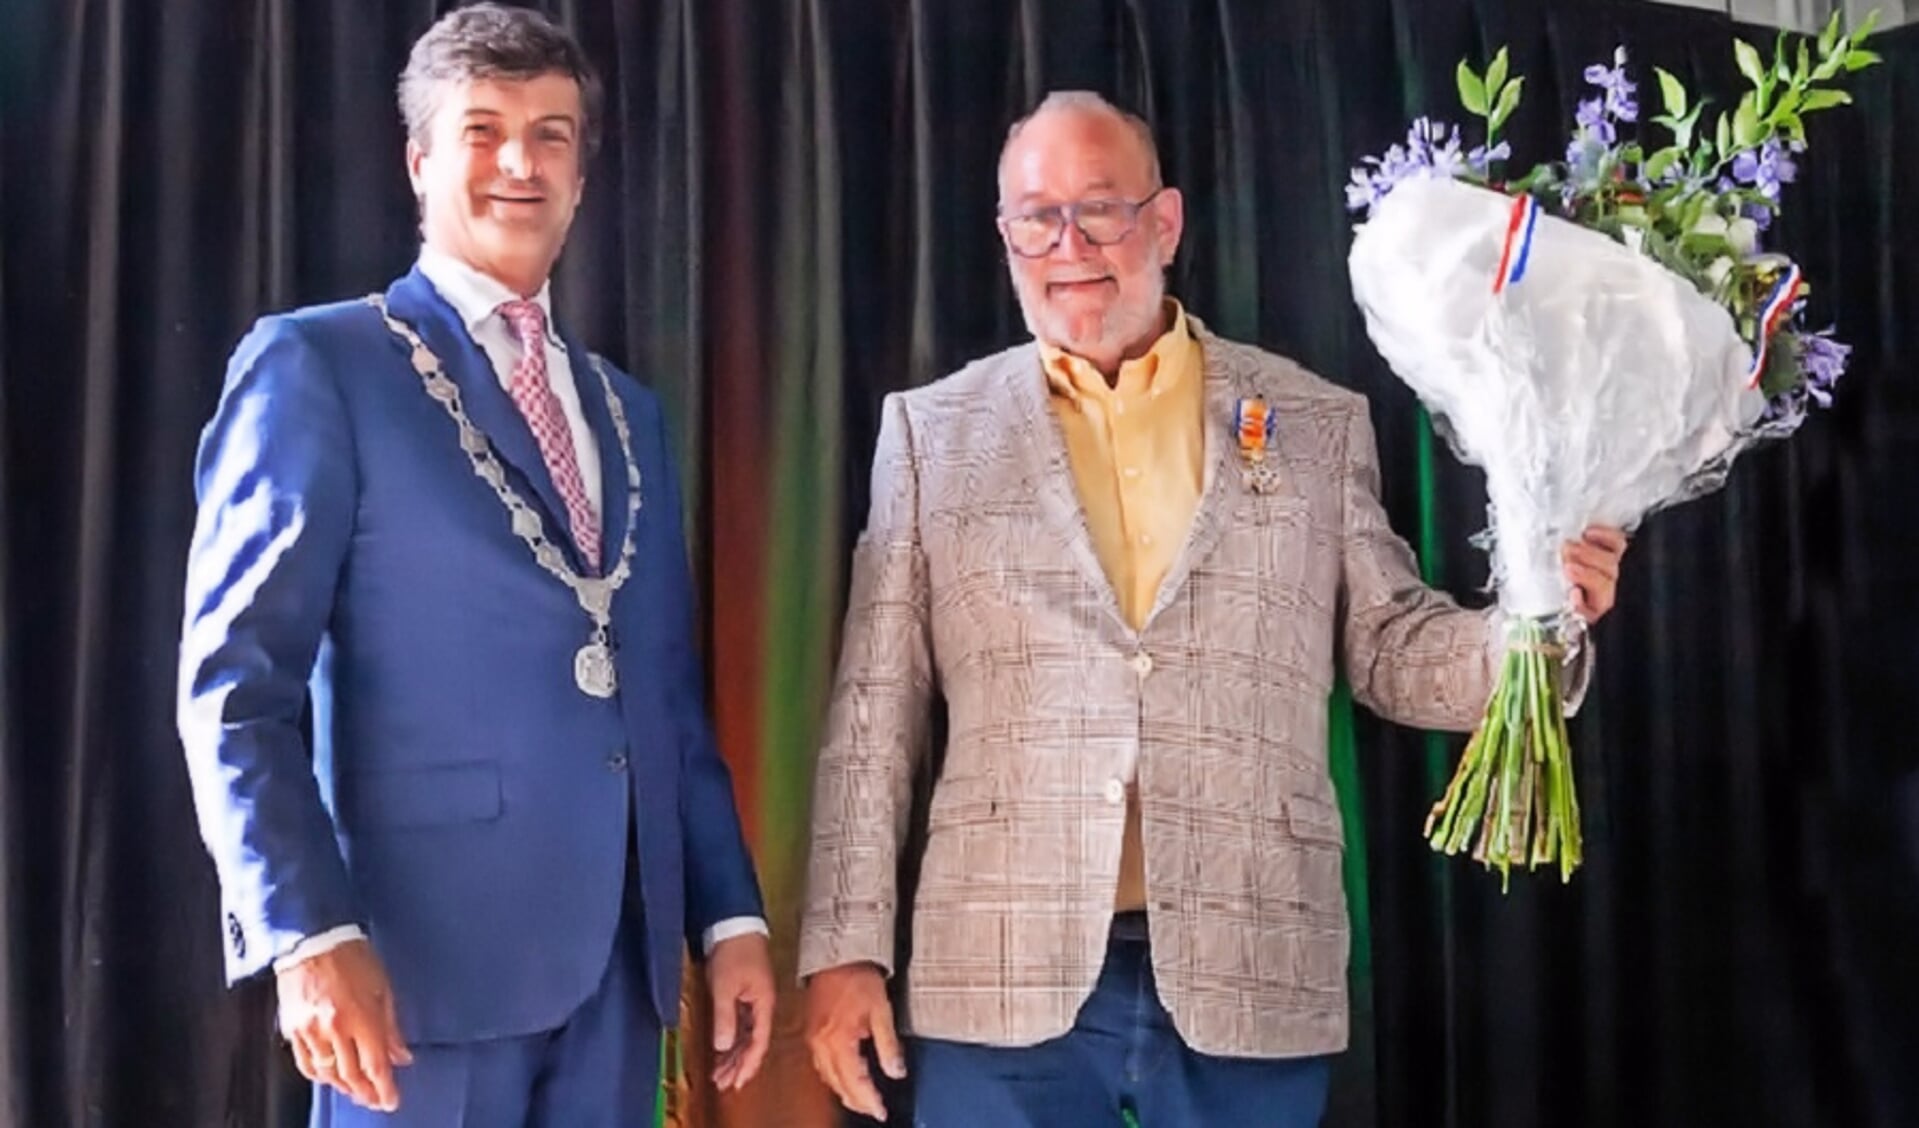 Burgemeester Van de Stadt van Langsingerland is trots op een Officier in zijn gemeente.